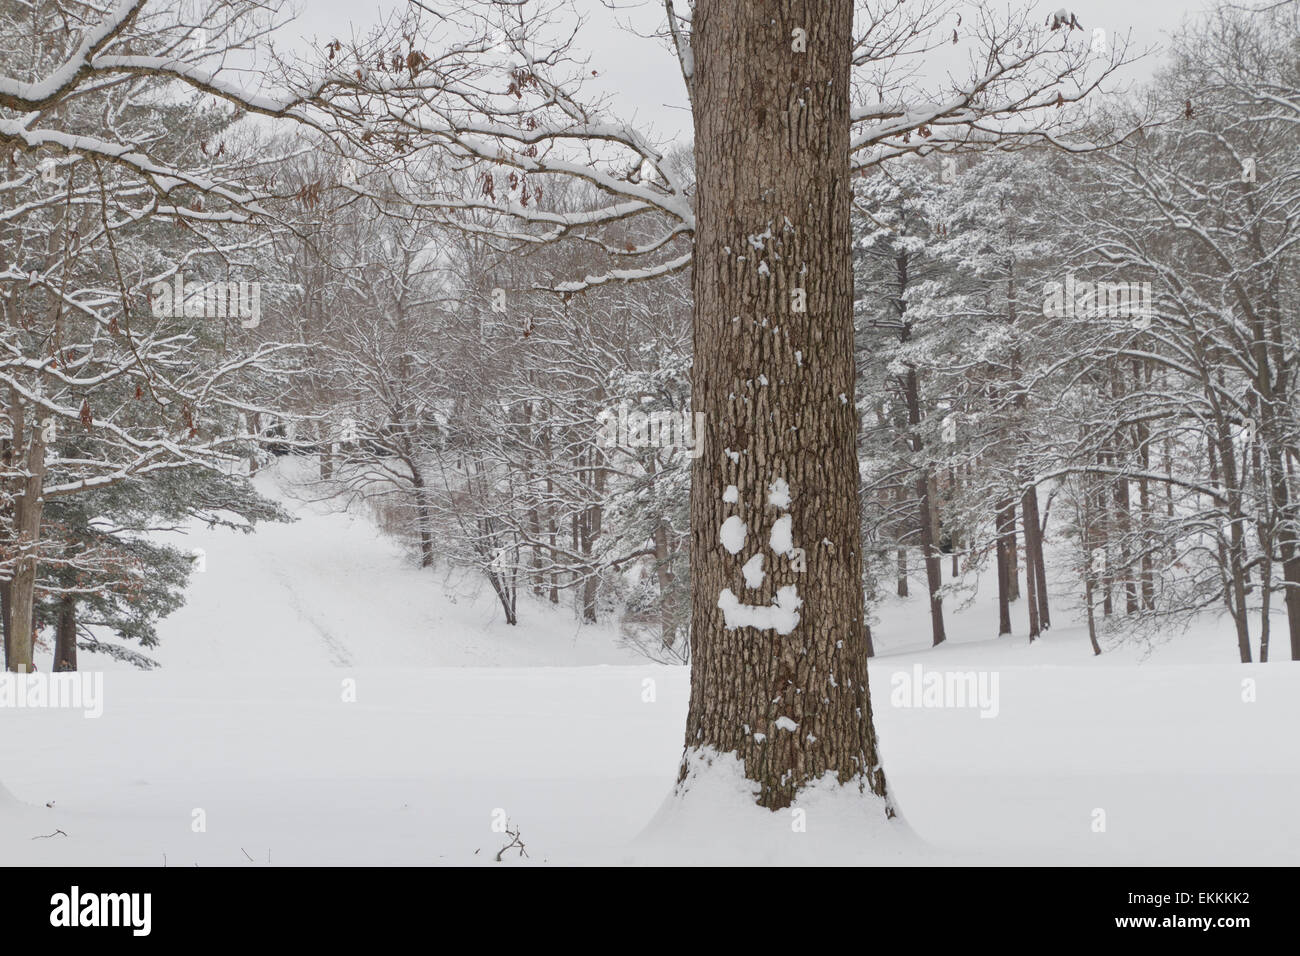 Eine Eiche mit ein glückliches Gesicht gemacht aus Schnee steht vor Ofa, von Bäumen gesäumten Hügel in frischem Schnee bedeckt Stockfoto